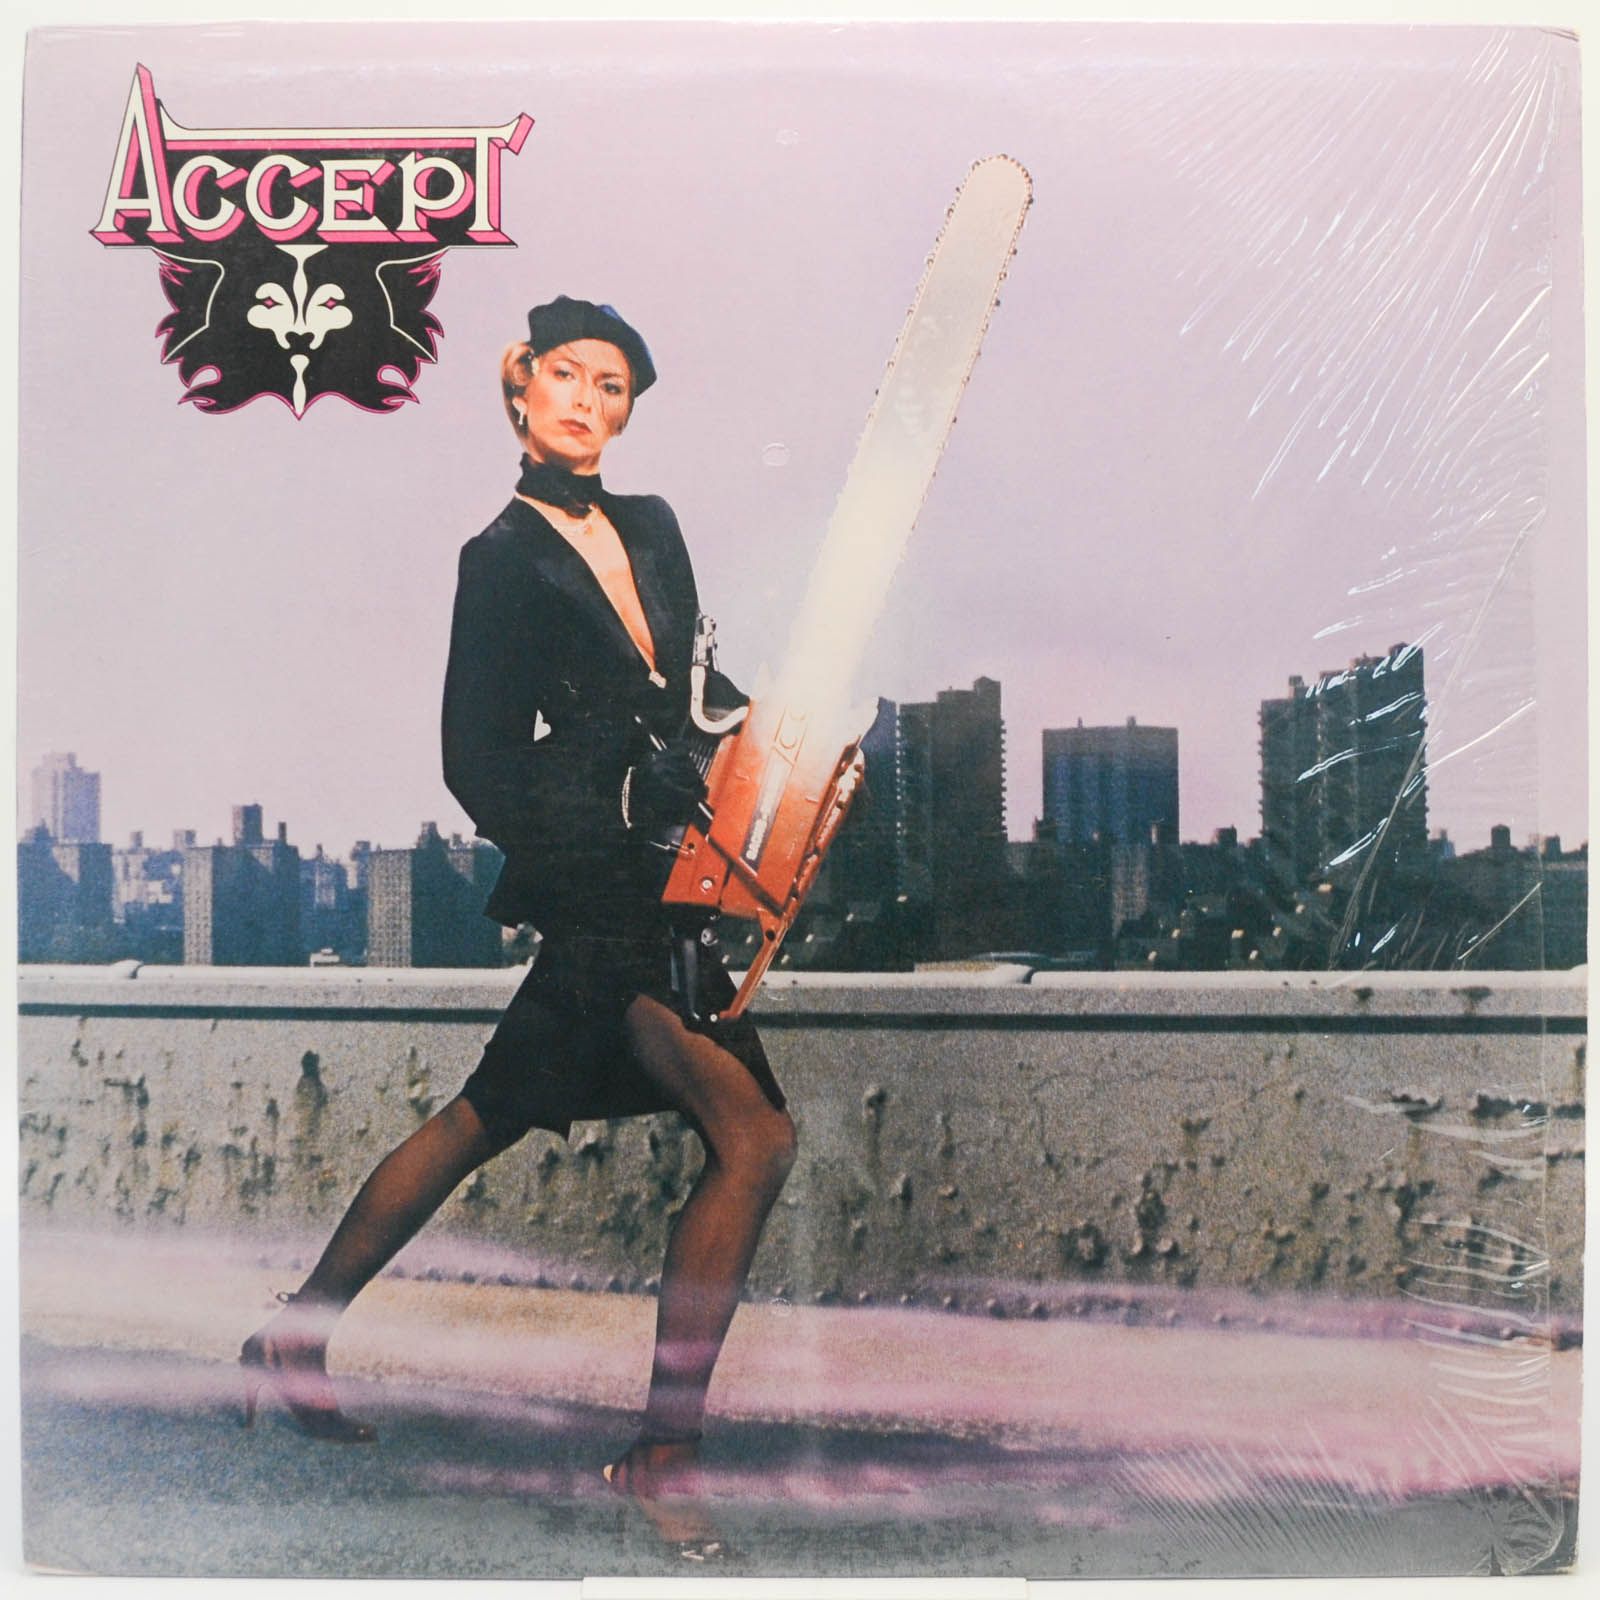 Accept — Accept (USA), 1979